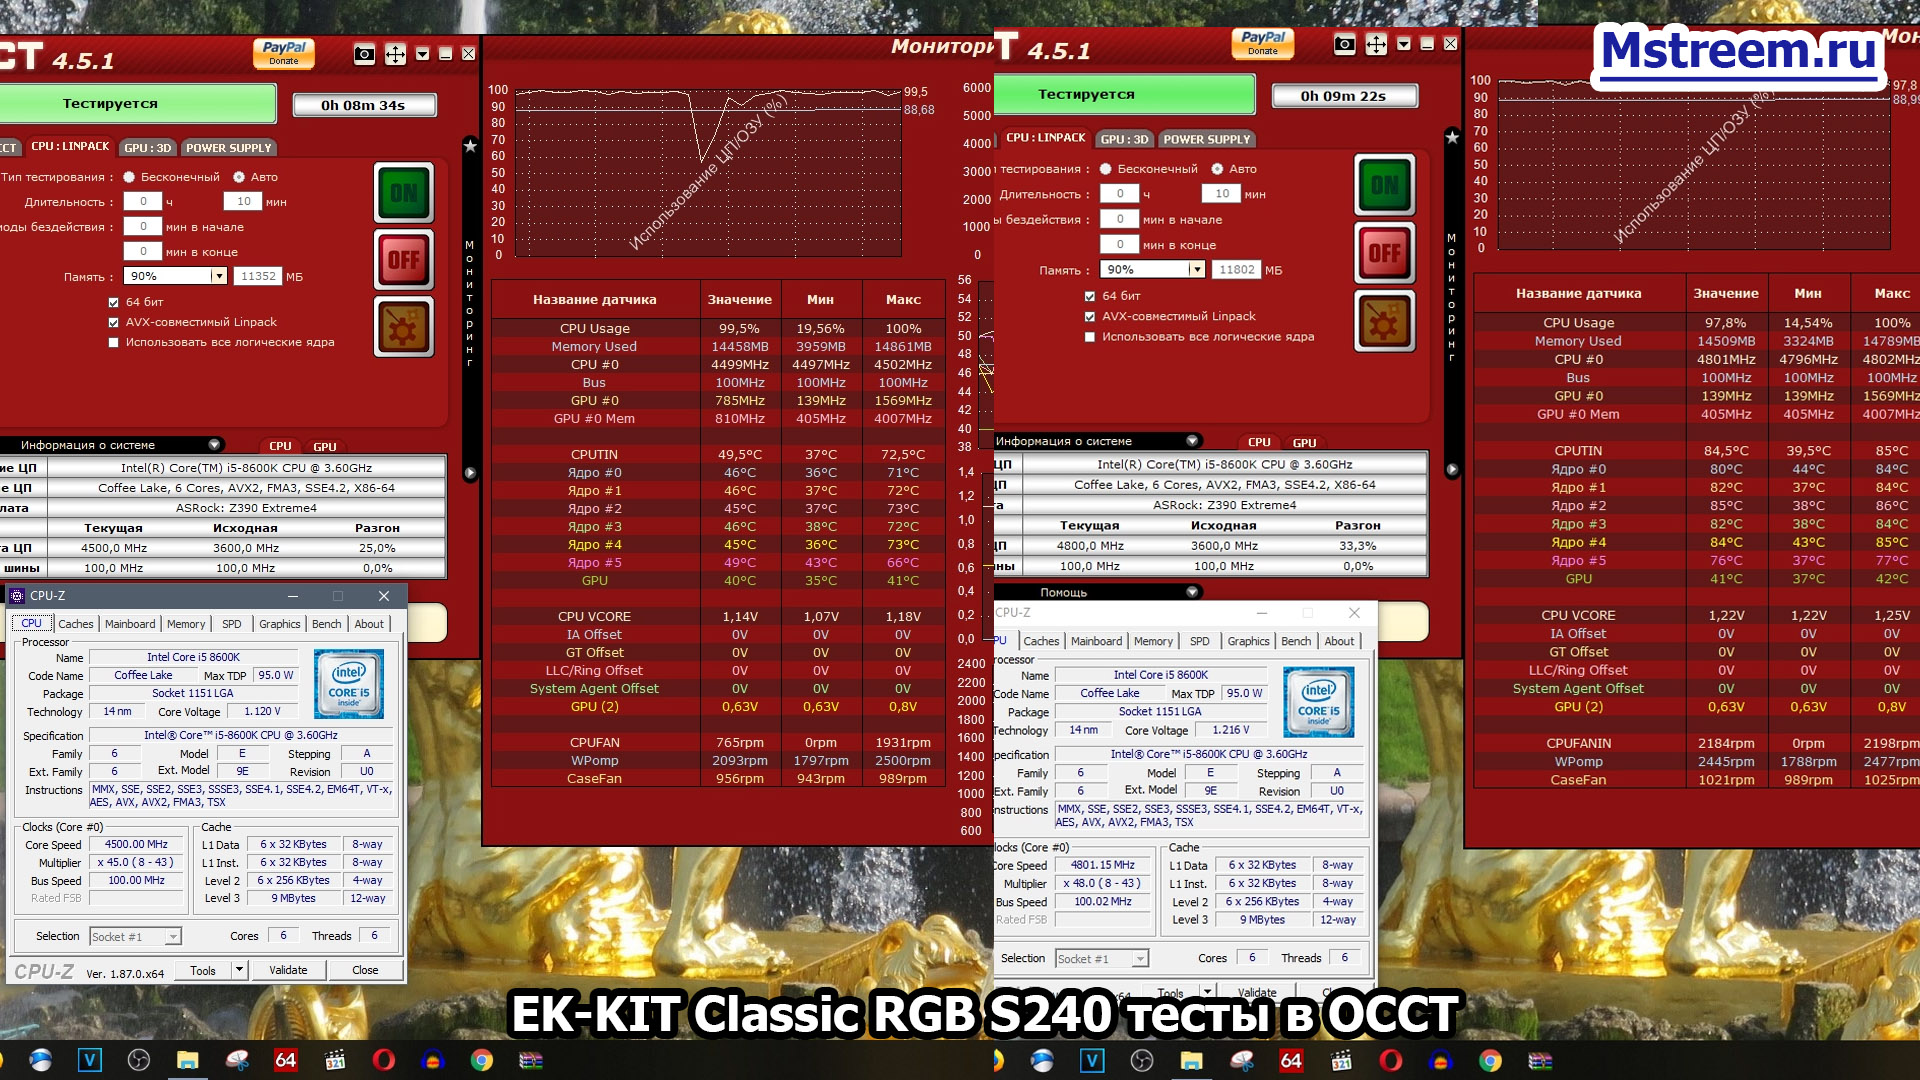  Водяная система охлаждения EK-KIT Classic RGB S240 Процессор Intel Core i5 8600K в разгоне 4.5 и 4.8 ГГц. Температурный тест в OCCT